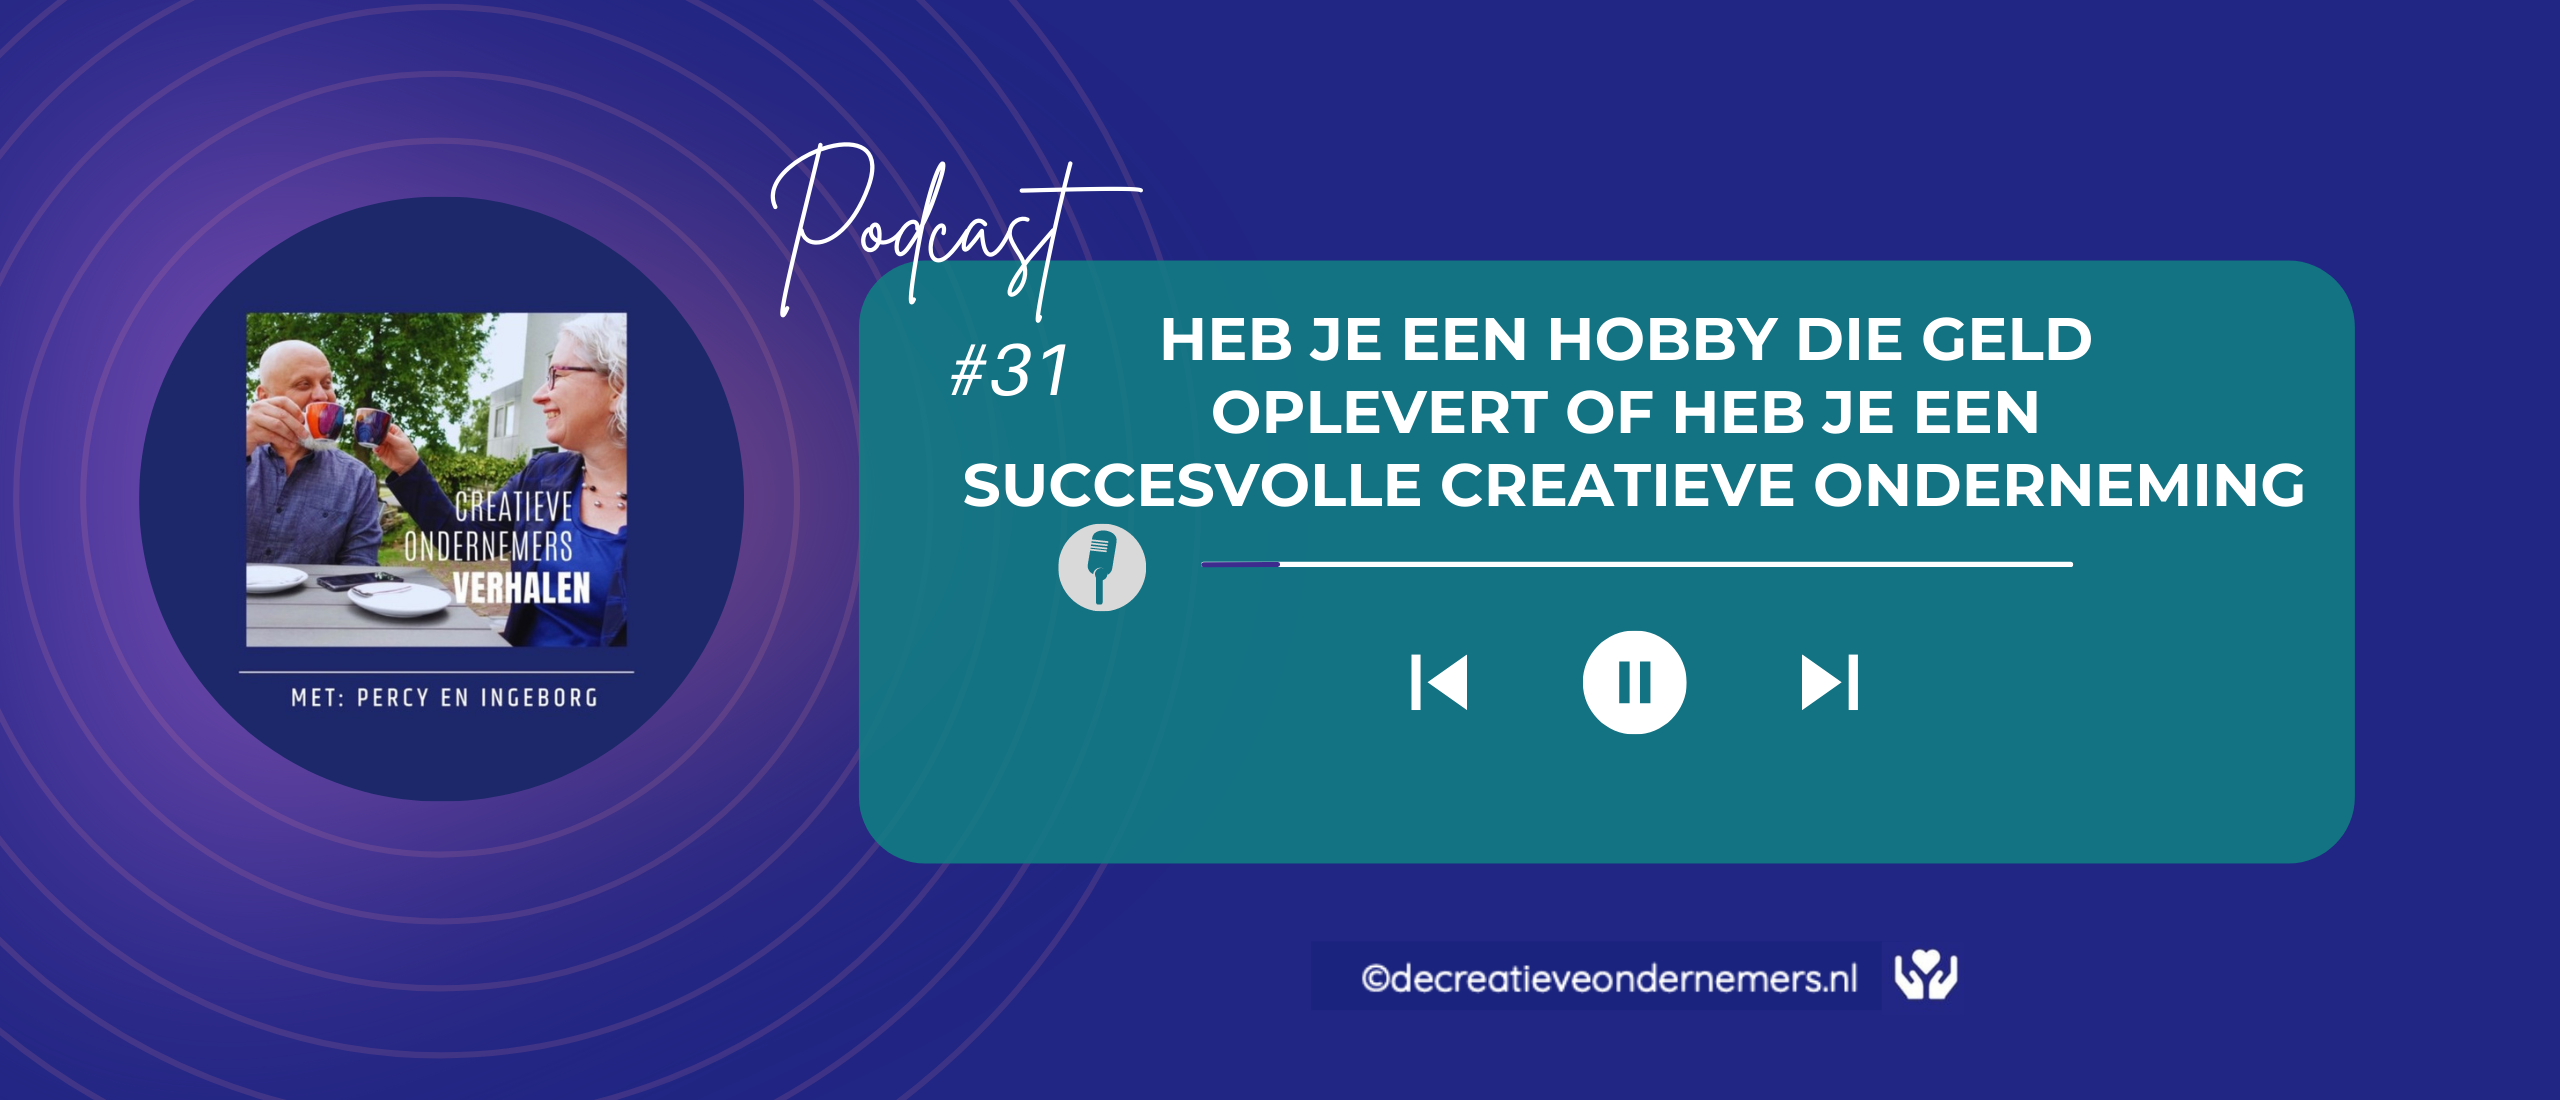 # 31 Heb je een hobby die geld op levert of heb je een succesvolle creatieve onderneming